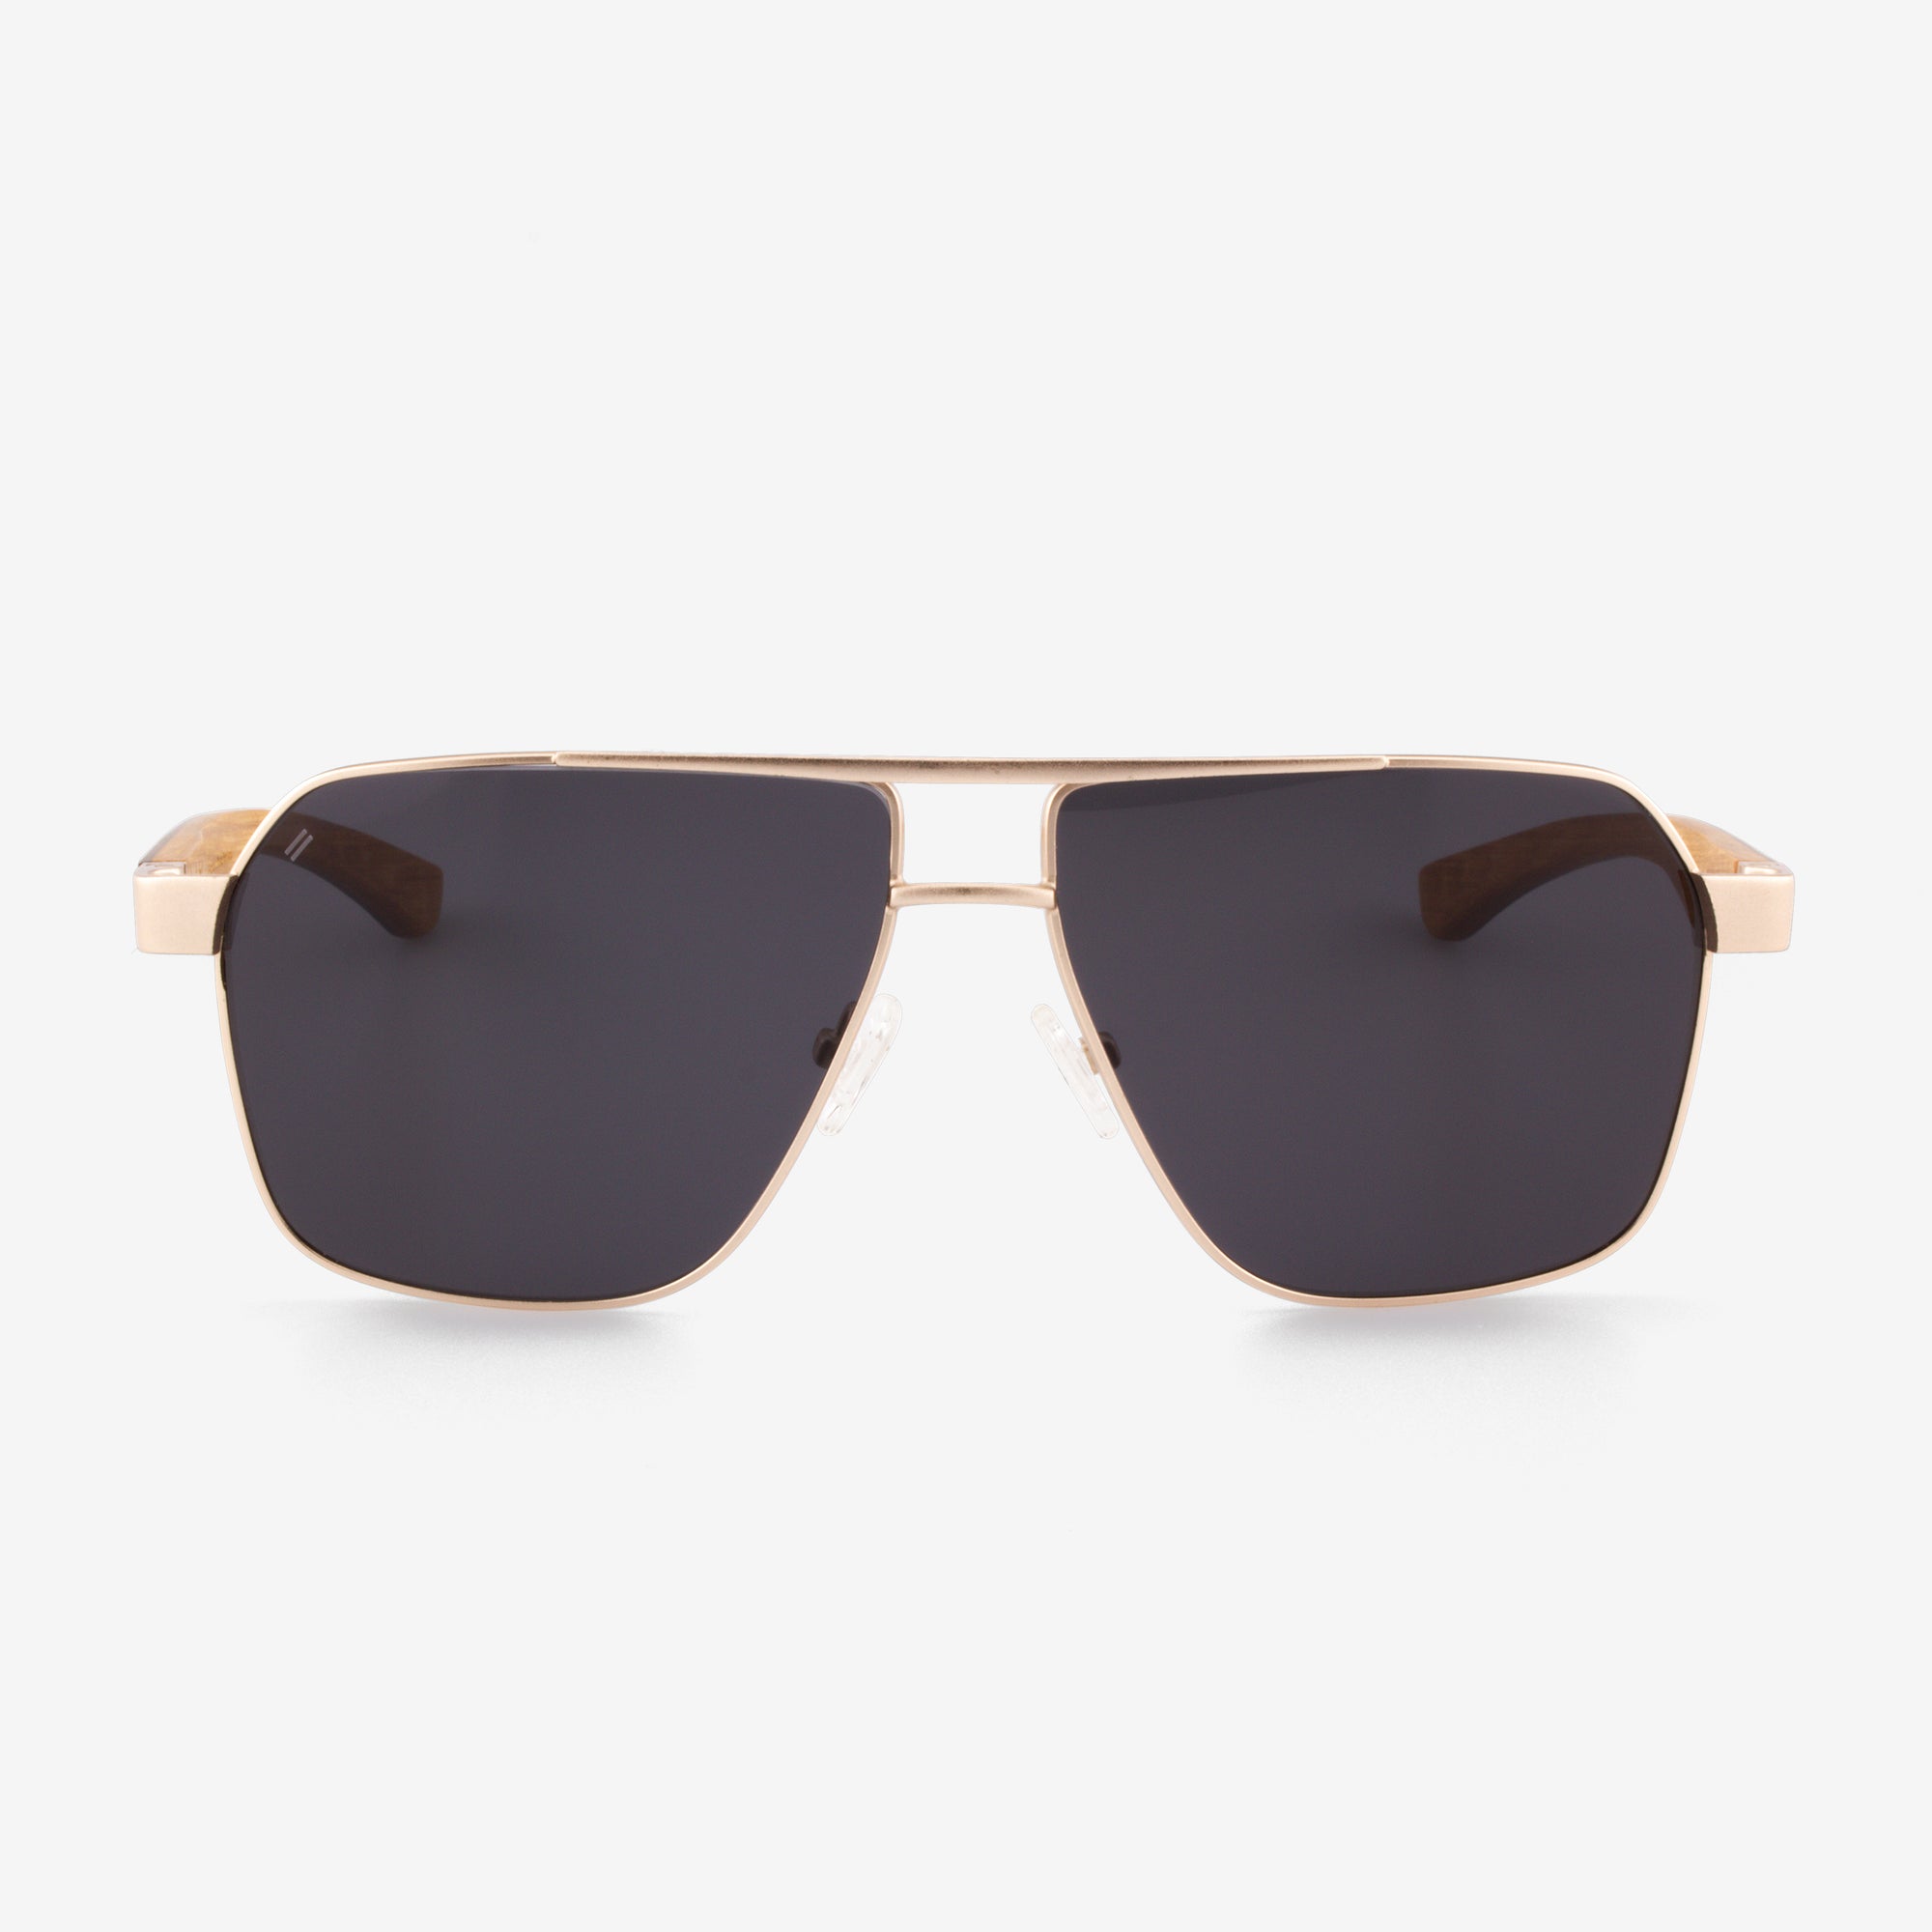 Pierce - Metal & Wood Sunglasses